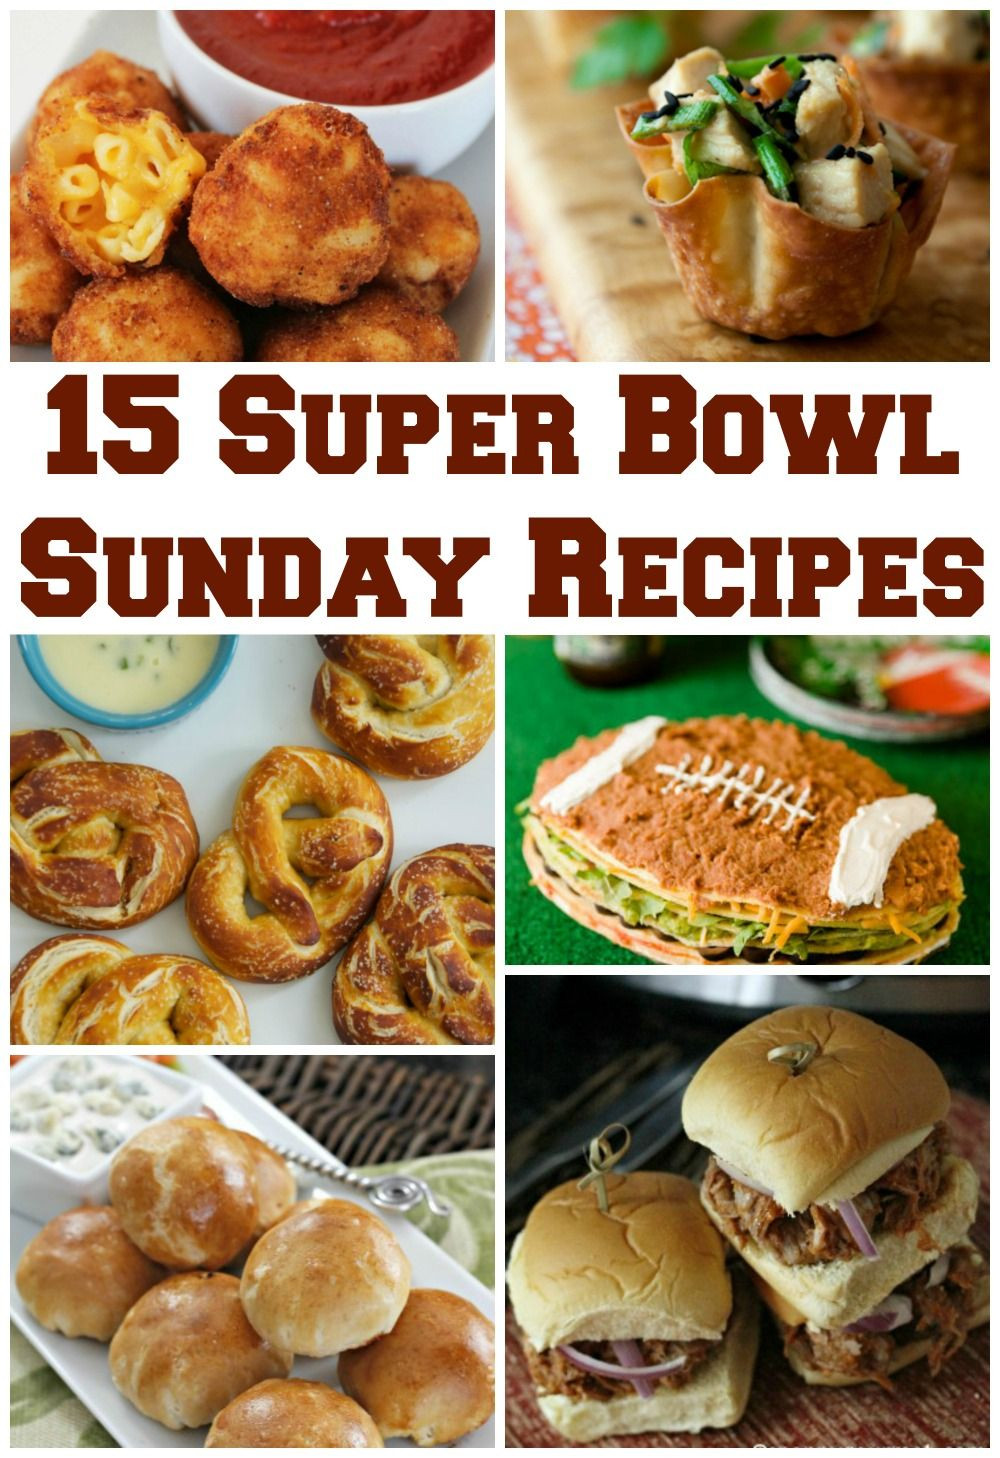 Super Bowl Sunday Recipes
 15 Super Bowl Sunday Recipes amotherworld